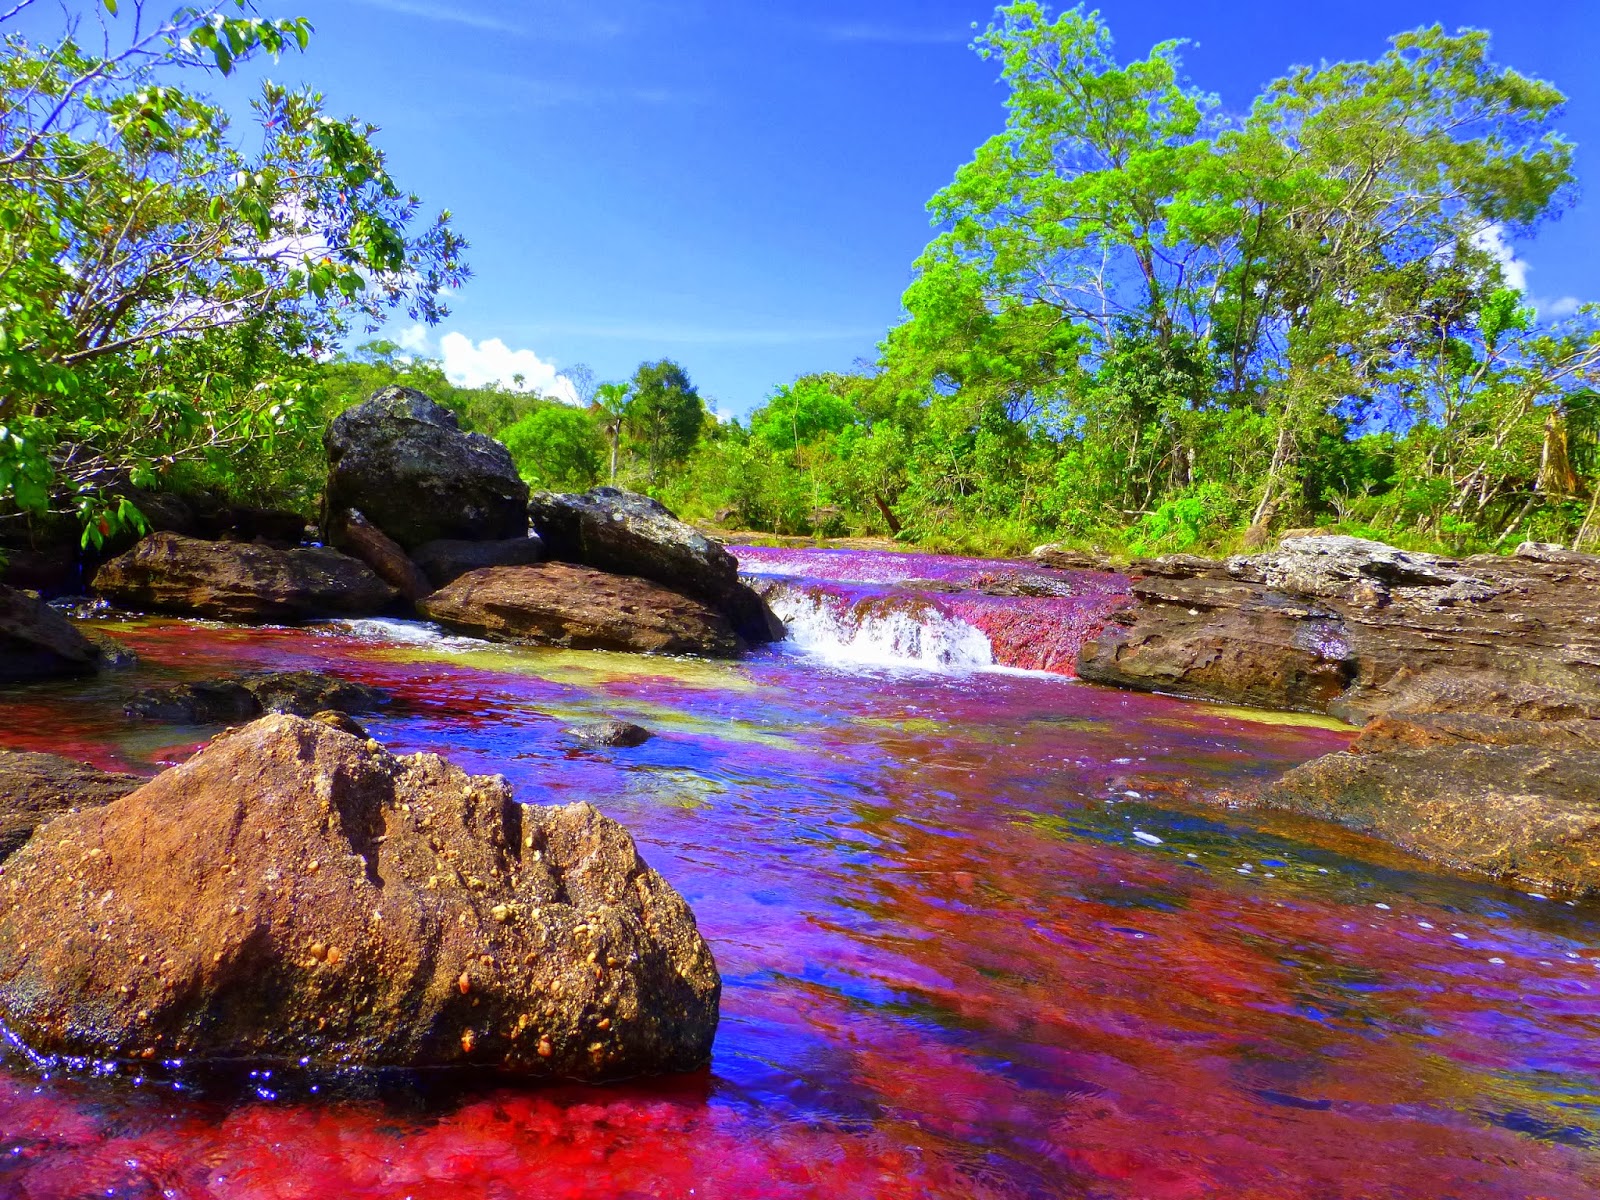 哥伦比亚彩虹河:同时拥有5种颜色,被认为是世界上最美丽的河流